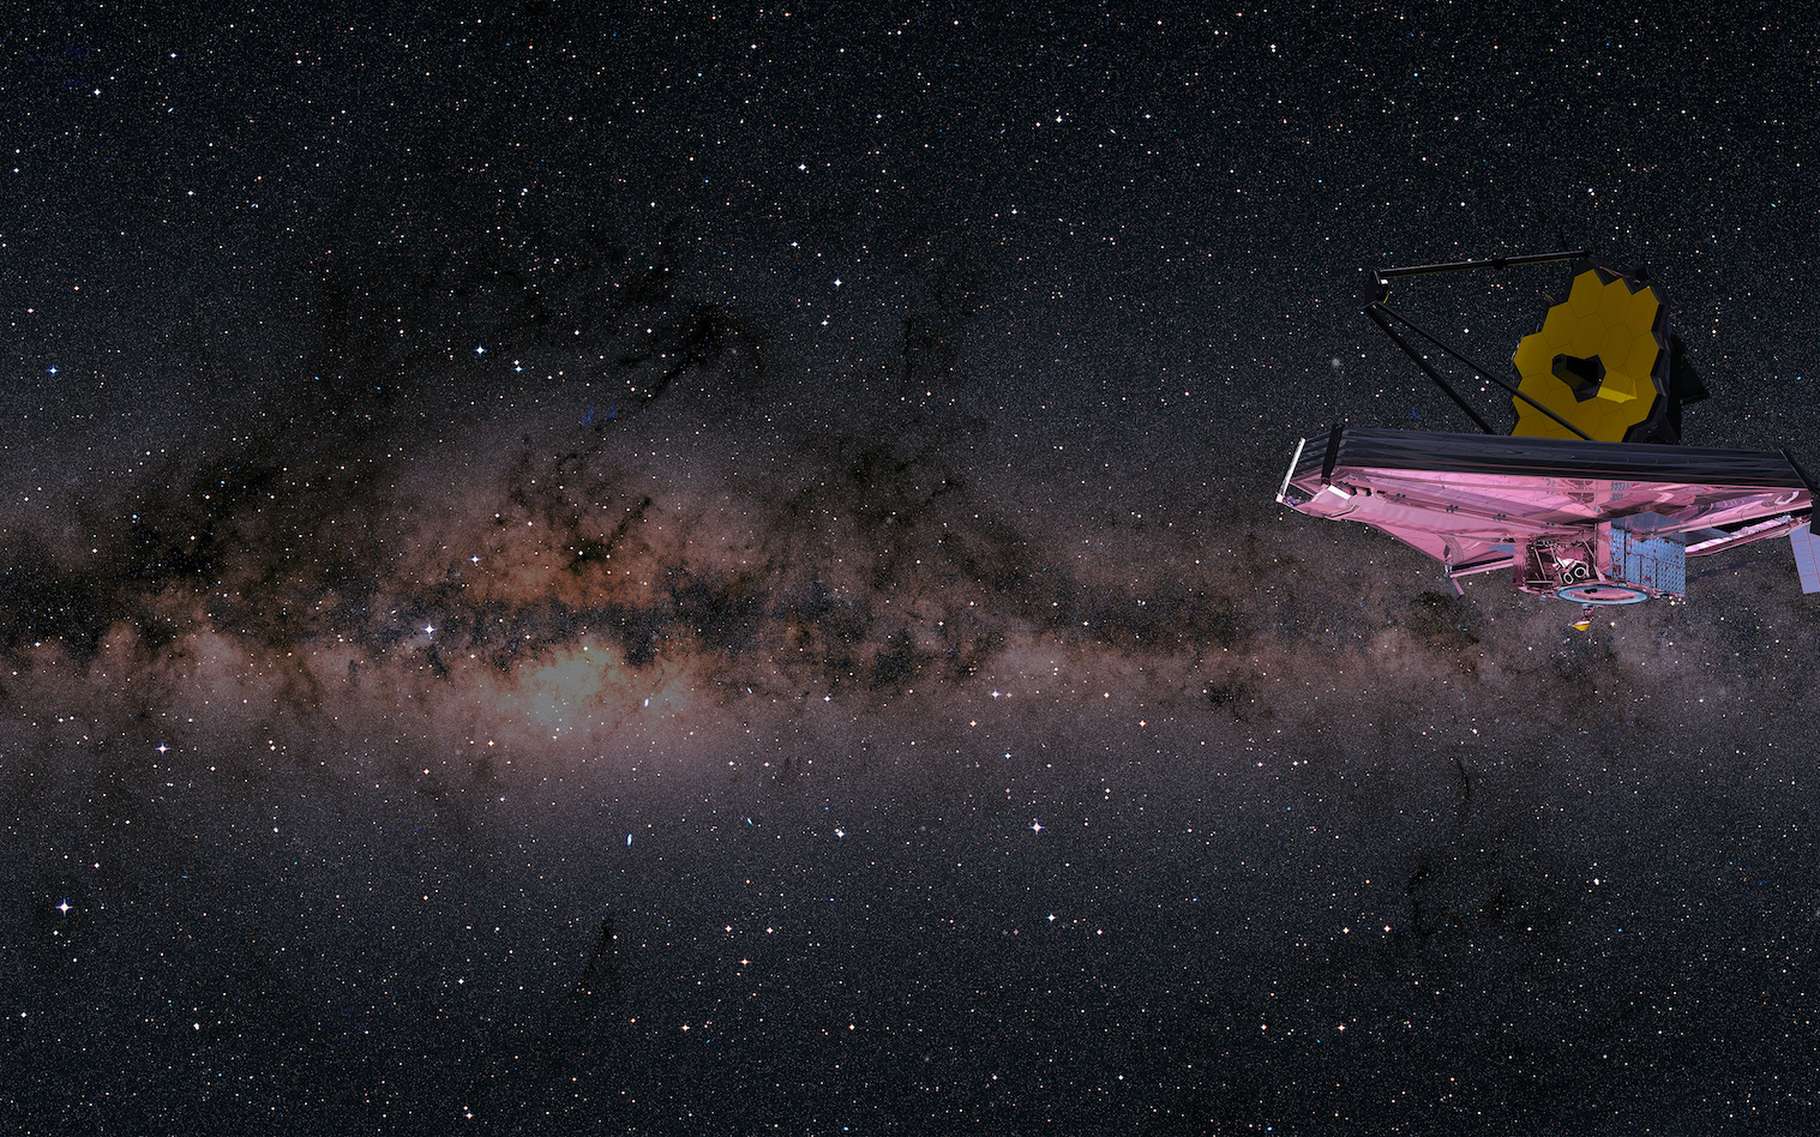 La Nasa annonce que le télescope spatial James Webb vient de détecter ses premiers photons !